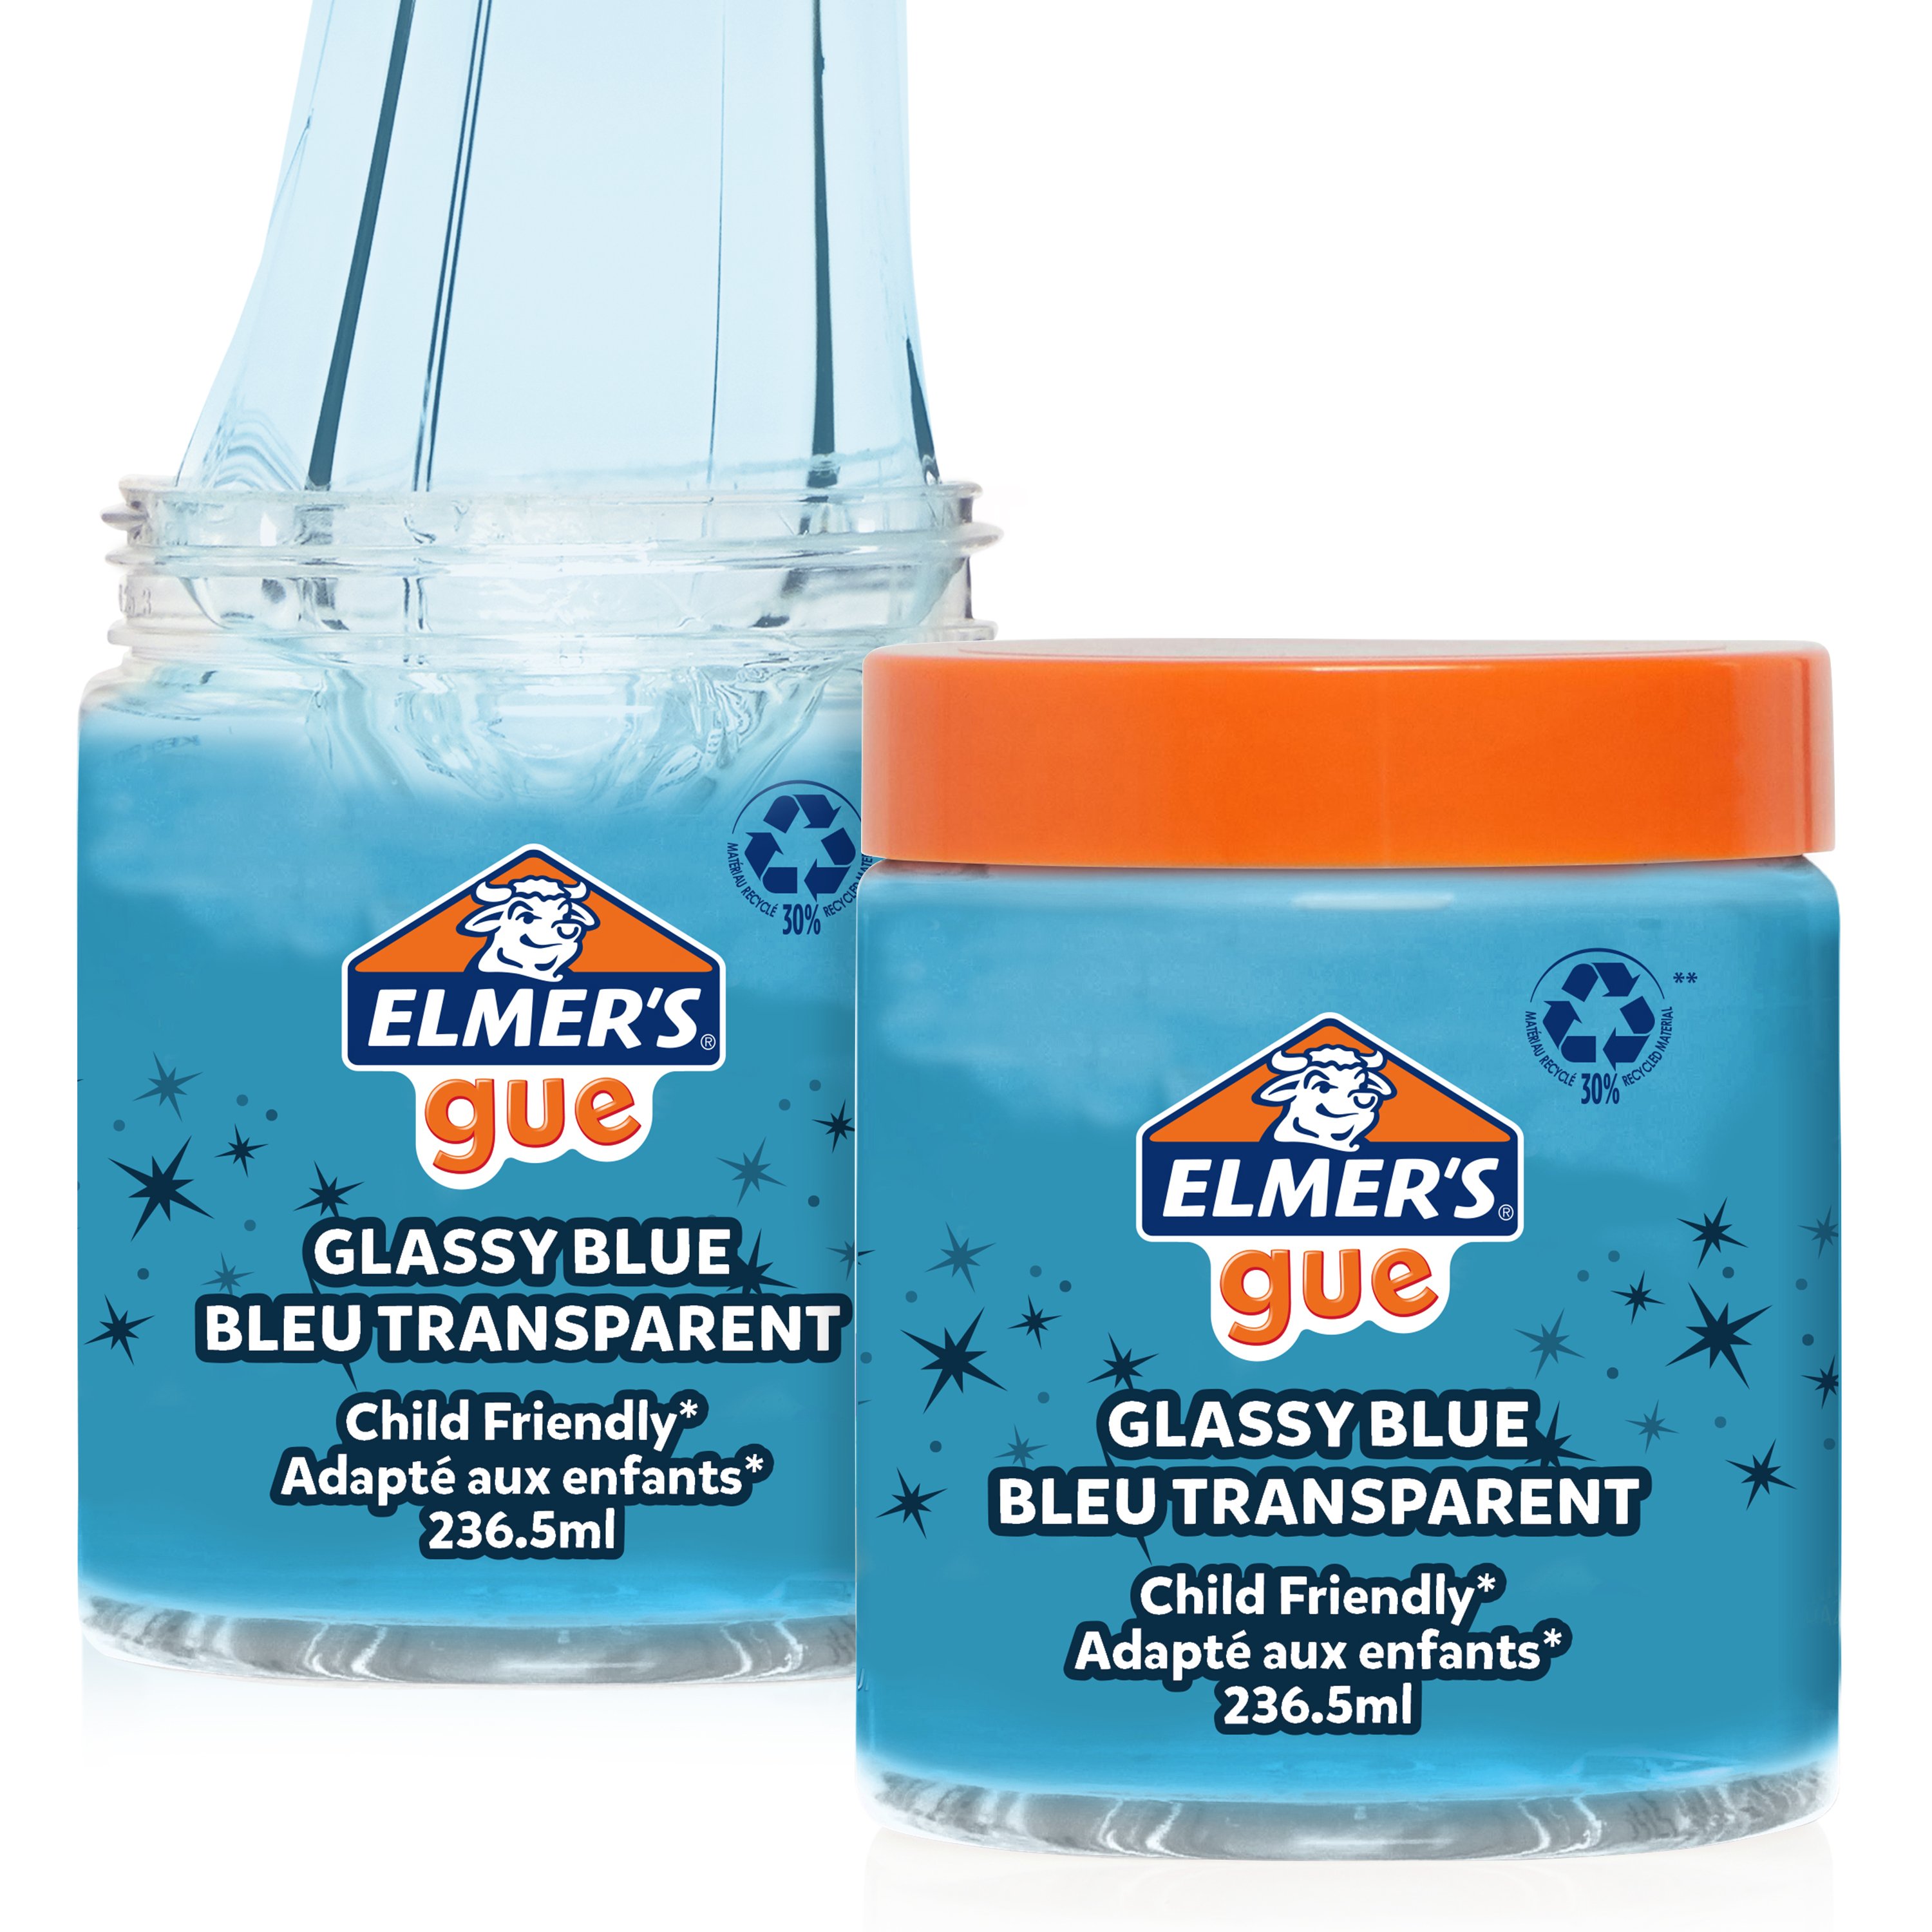 Elmer's Gue Premade, Retro Flash Slime Kit, 24 oz, Assorted Colors  (2122911)